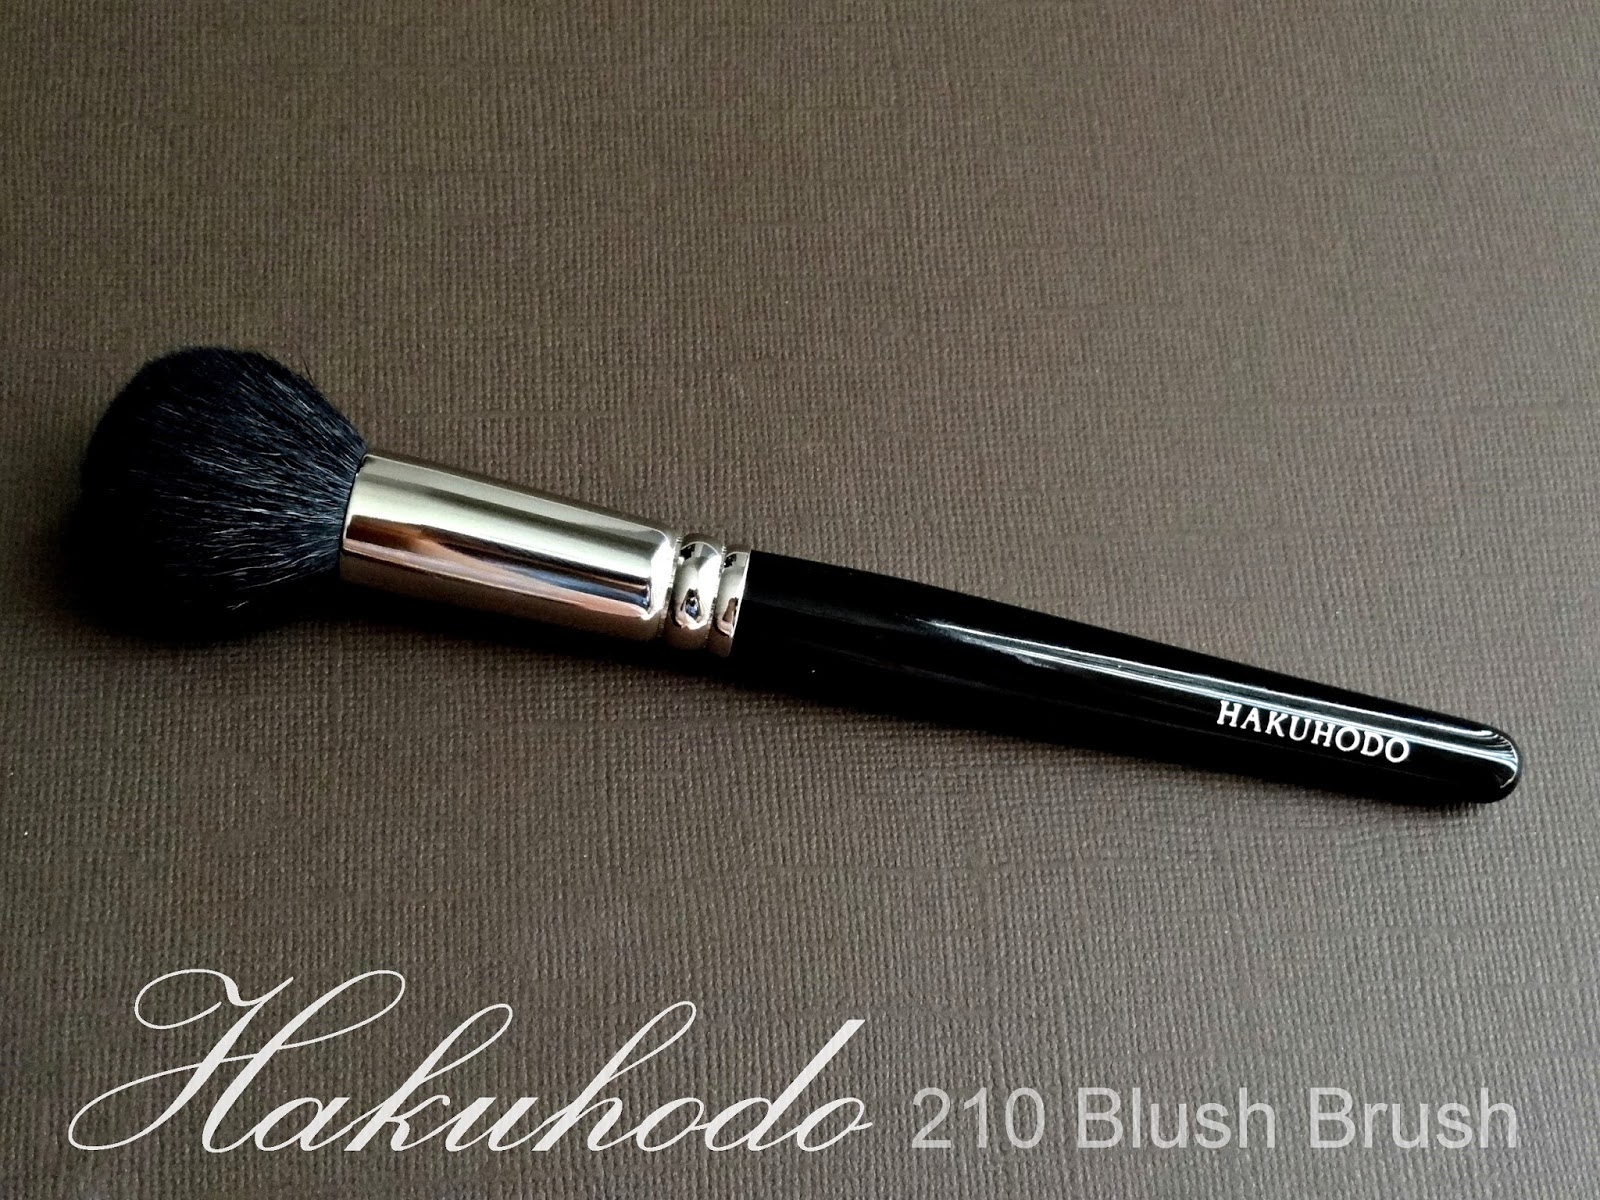 Hakuhodo 210 Blush Brush Round Review, Photos